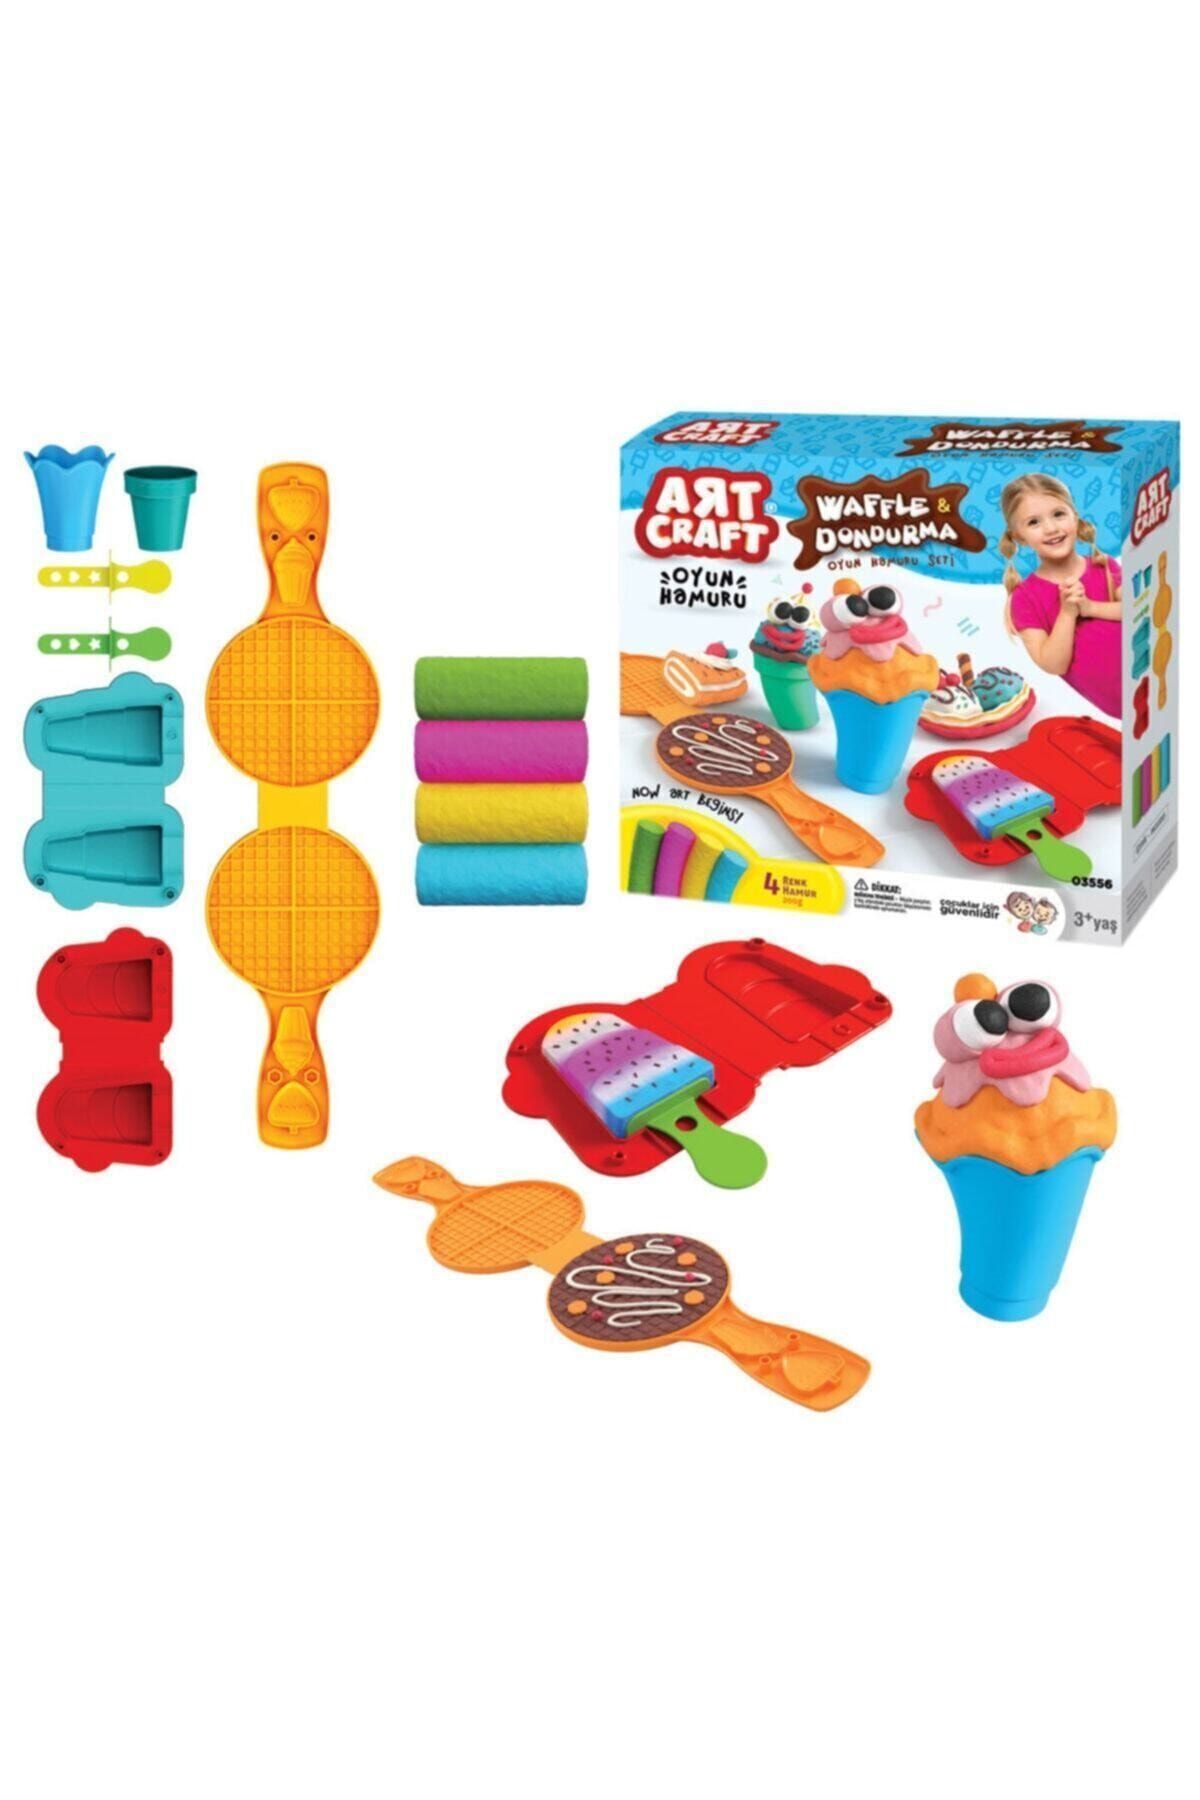 Art Craft Çocuk 200 gr Oyun Hamuru Ve 7 Adet Aparat Waffle & Dondurma Yapma Oyun Seti